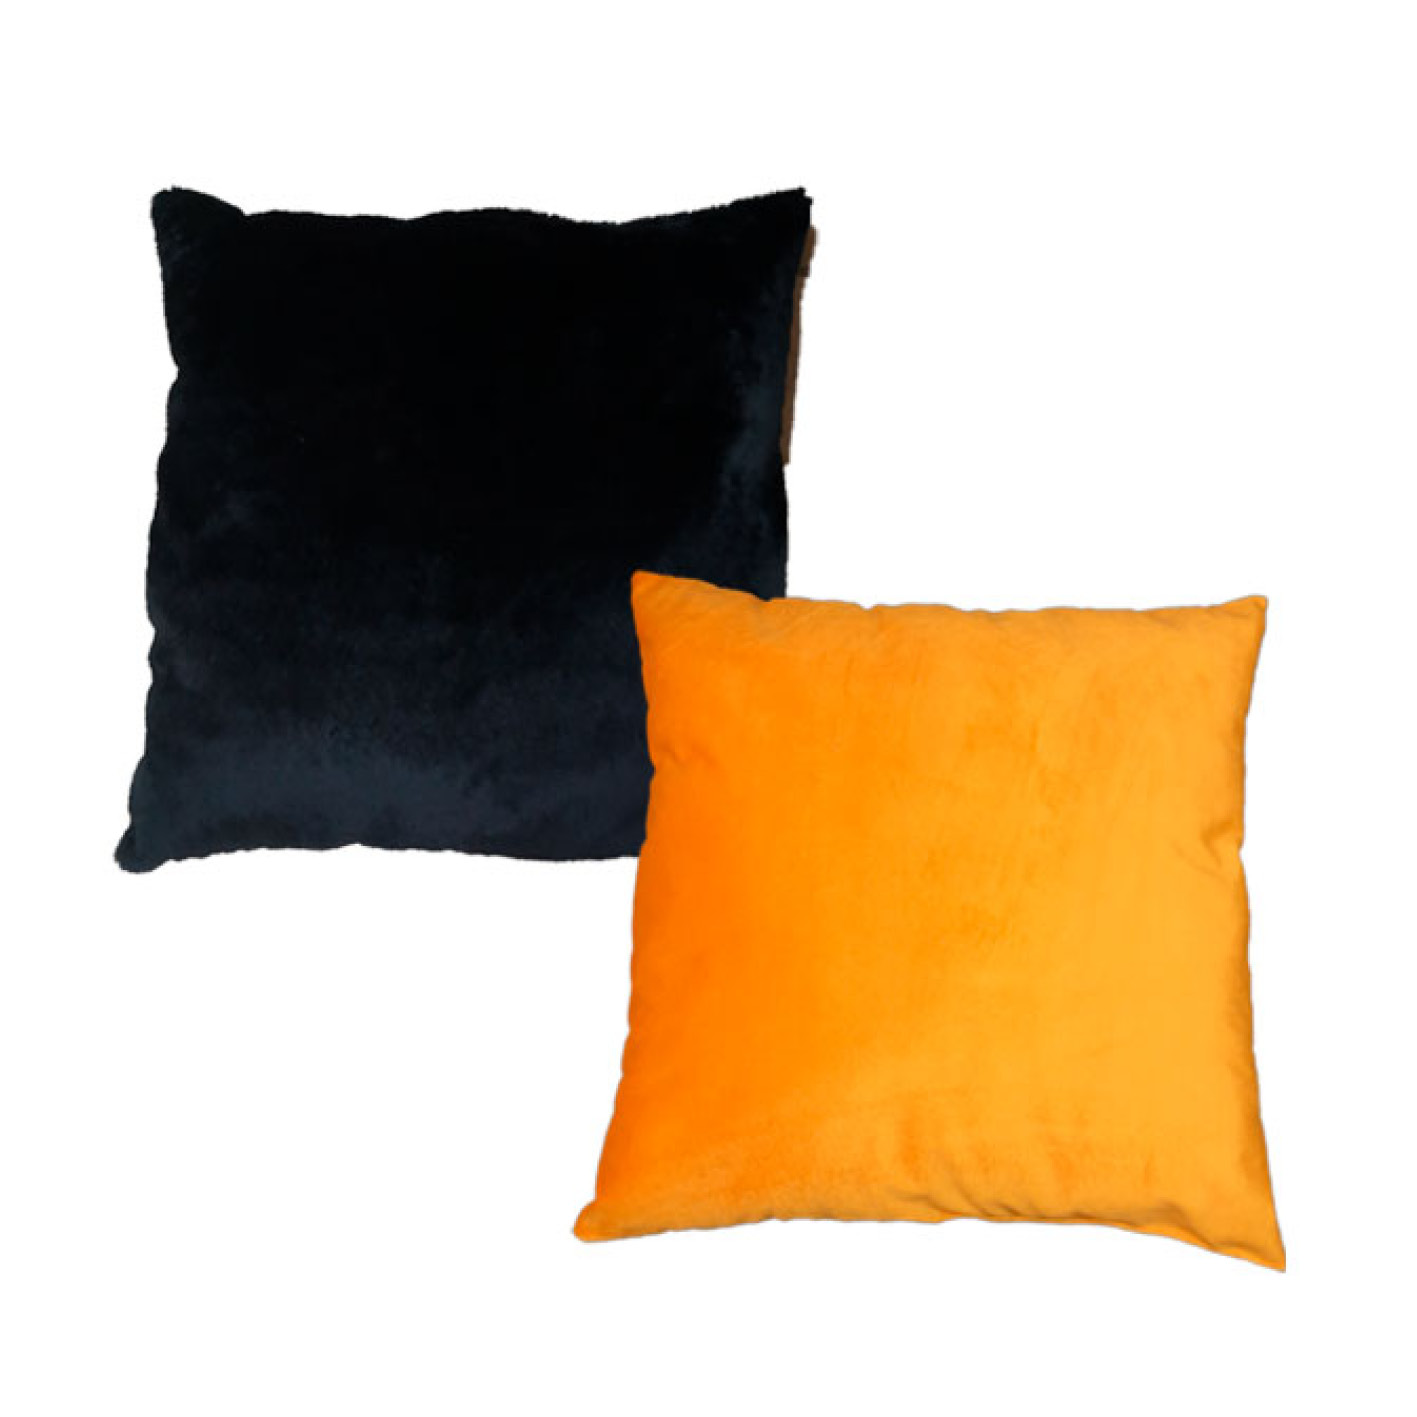 almofada decorativa preta e laranja